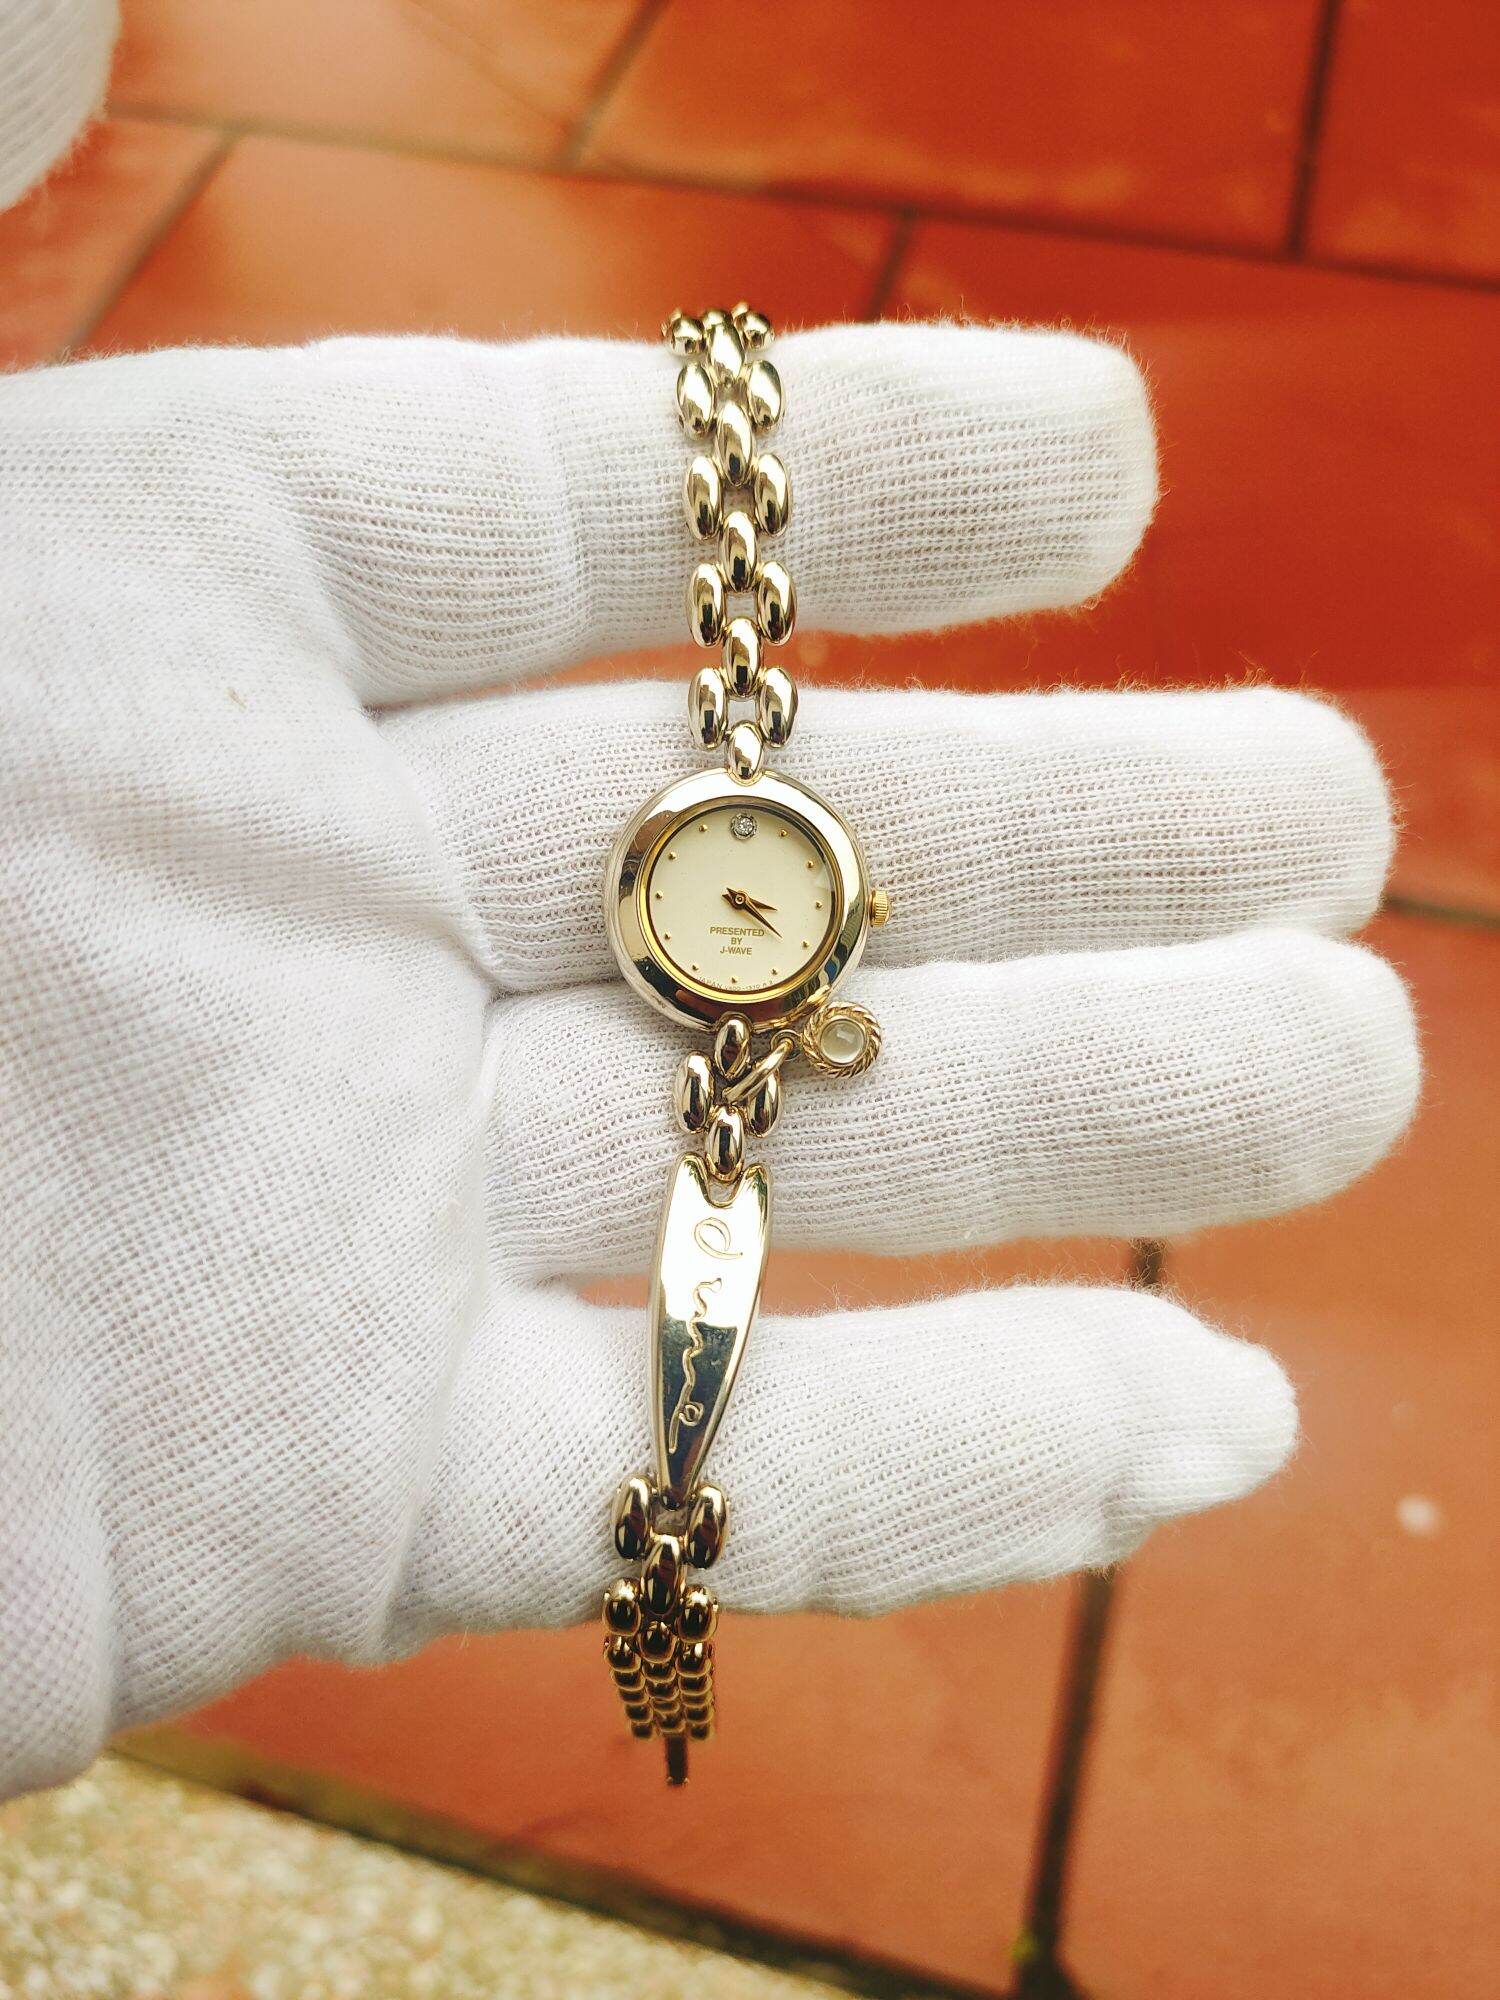 Đồng hồ J wave nữ đính kim cương 12h, mặt cực đẹp, size 20mm thumbnail